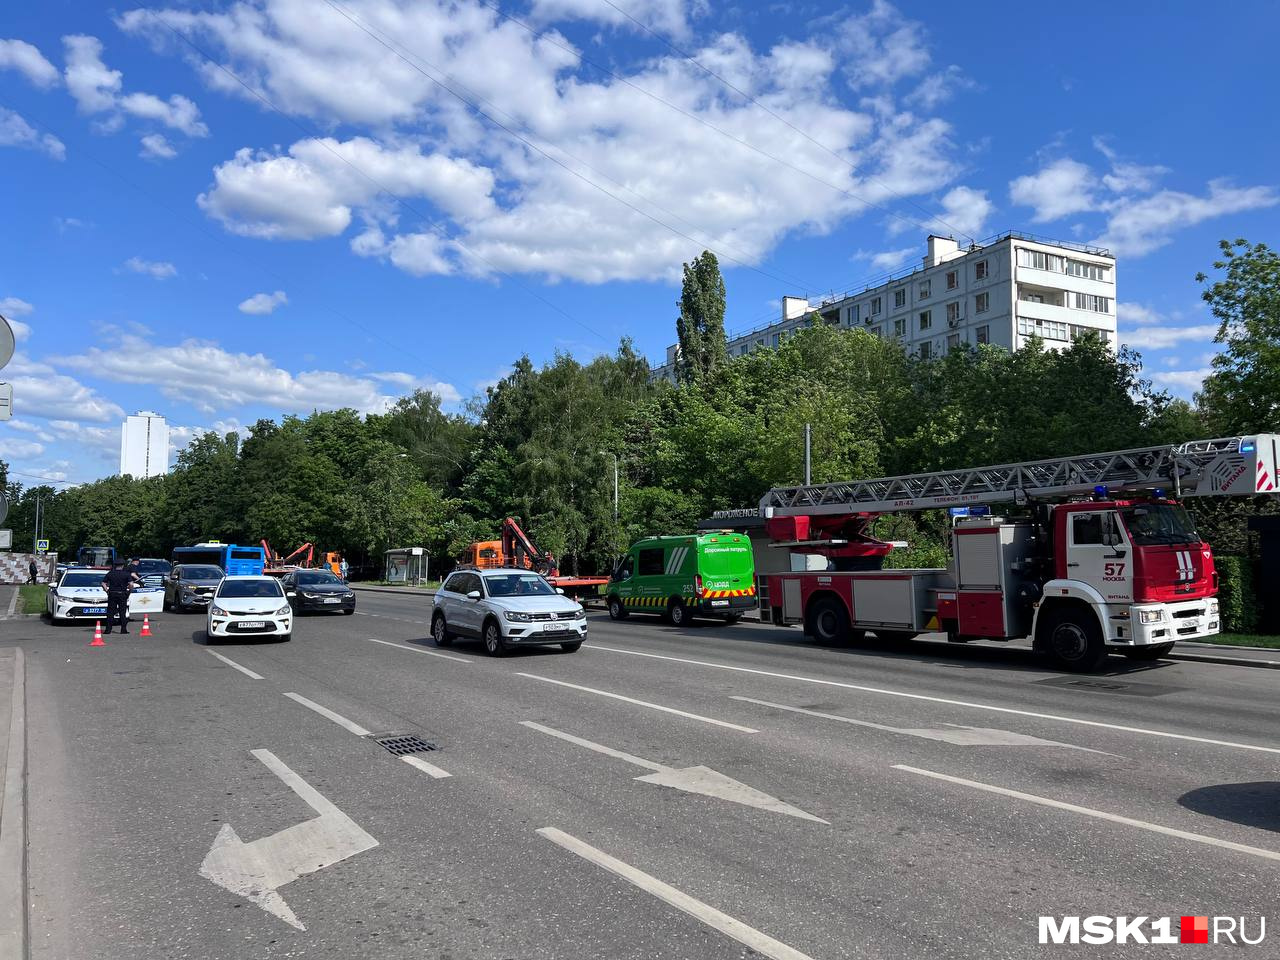 8 беспилотников, взрывы и пострадавшие. Первая массовая атака дронов на Москву: онлайн-трансляция